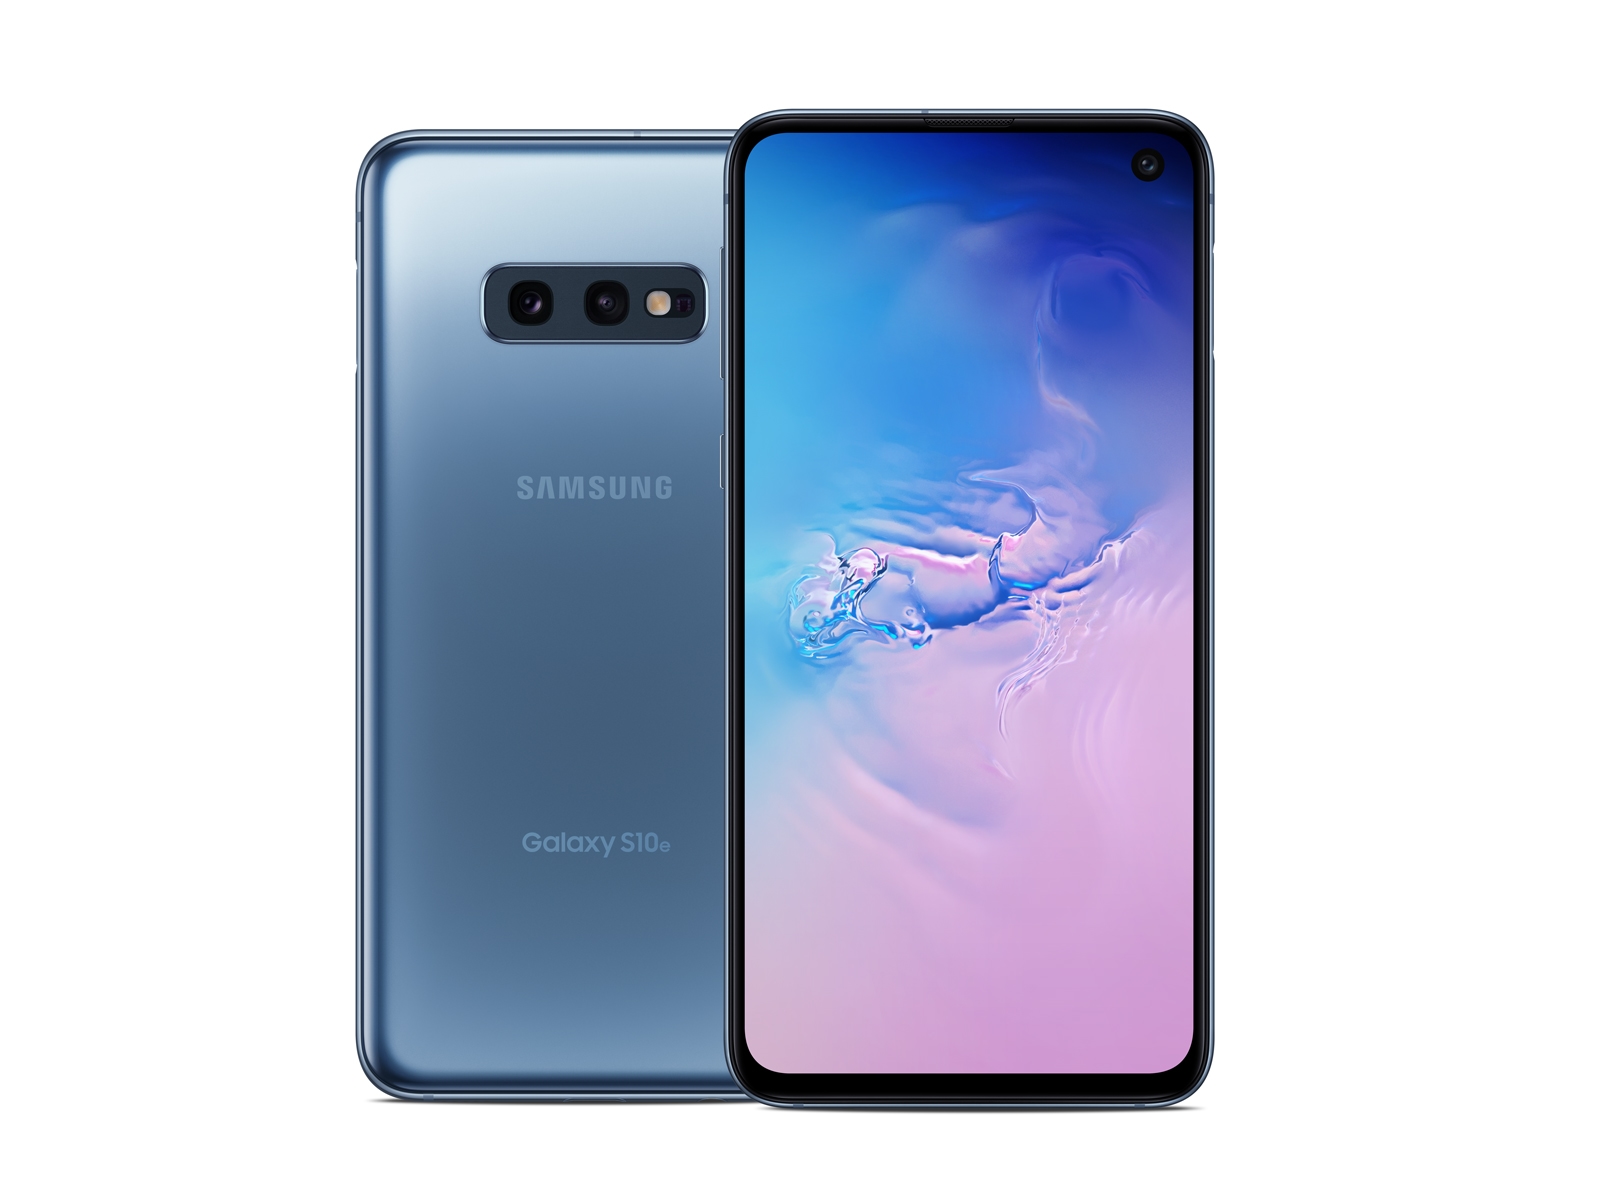 Samsung - Galaxy Tab A (2019) - 8 - WiFi - 32GB - Silver - SM-T290NZSAXAR